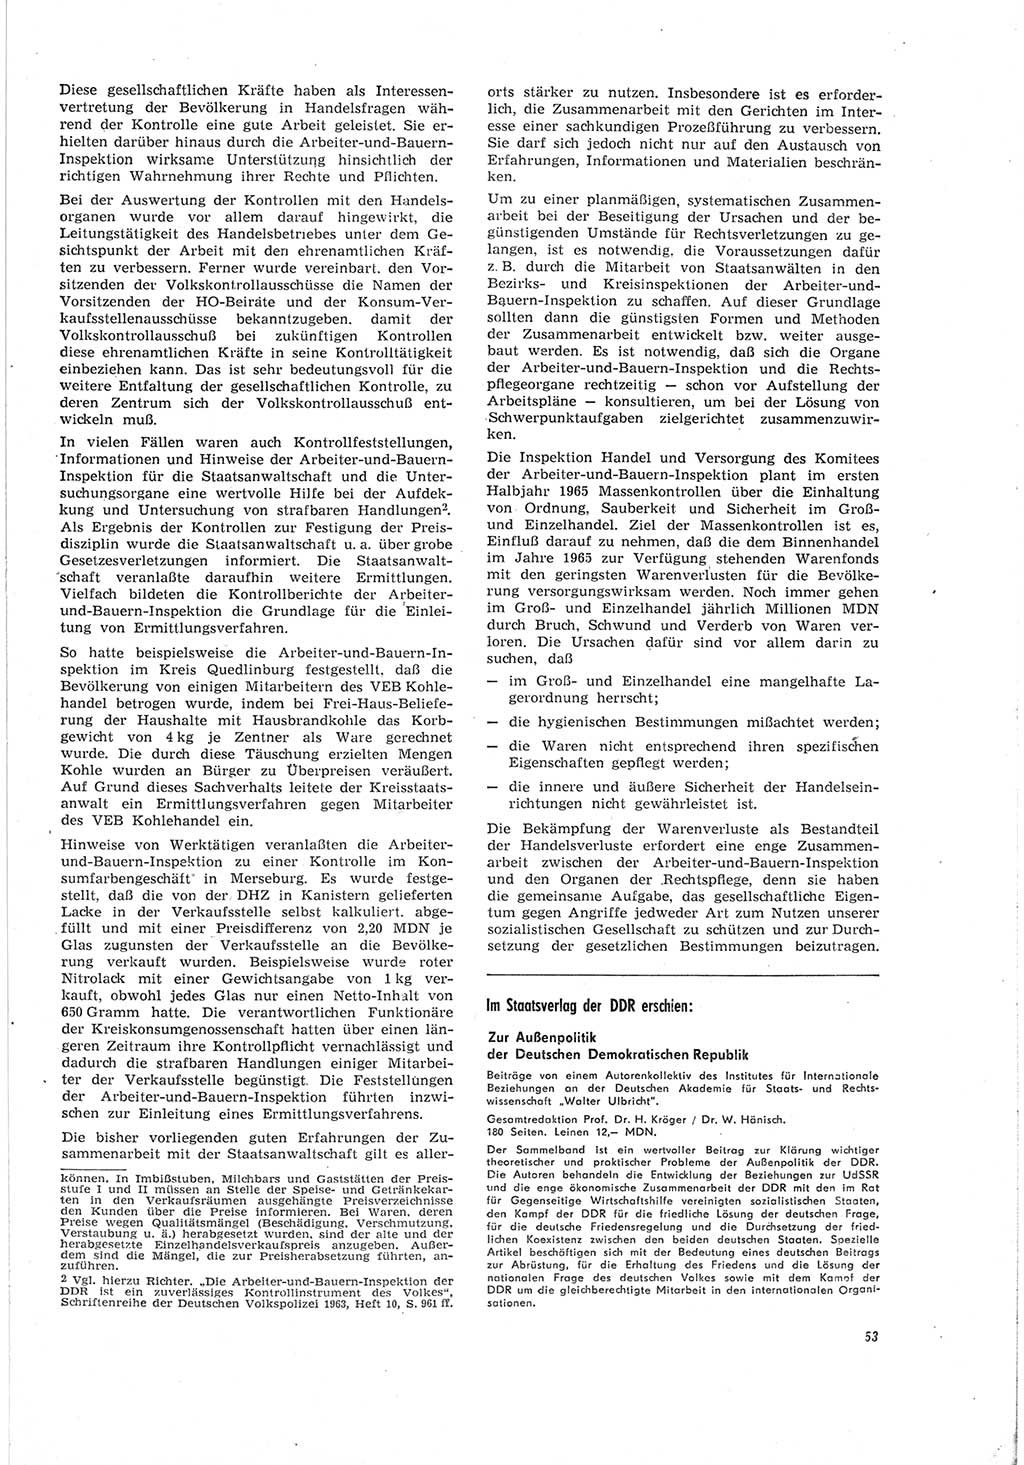 Neue Justiz (NJ), Zeitschrift für Recht und Rechtswissenschaft [Deutsche Demokratische Republik (DDR)], 19. Jahrgang 1965, Seite 53 (NJ DDR 1965, S. 53)